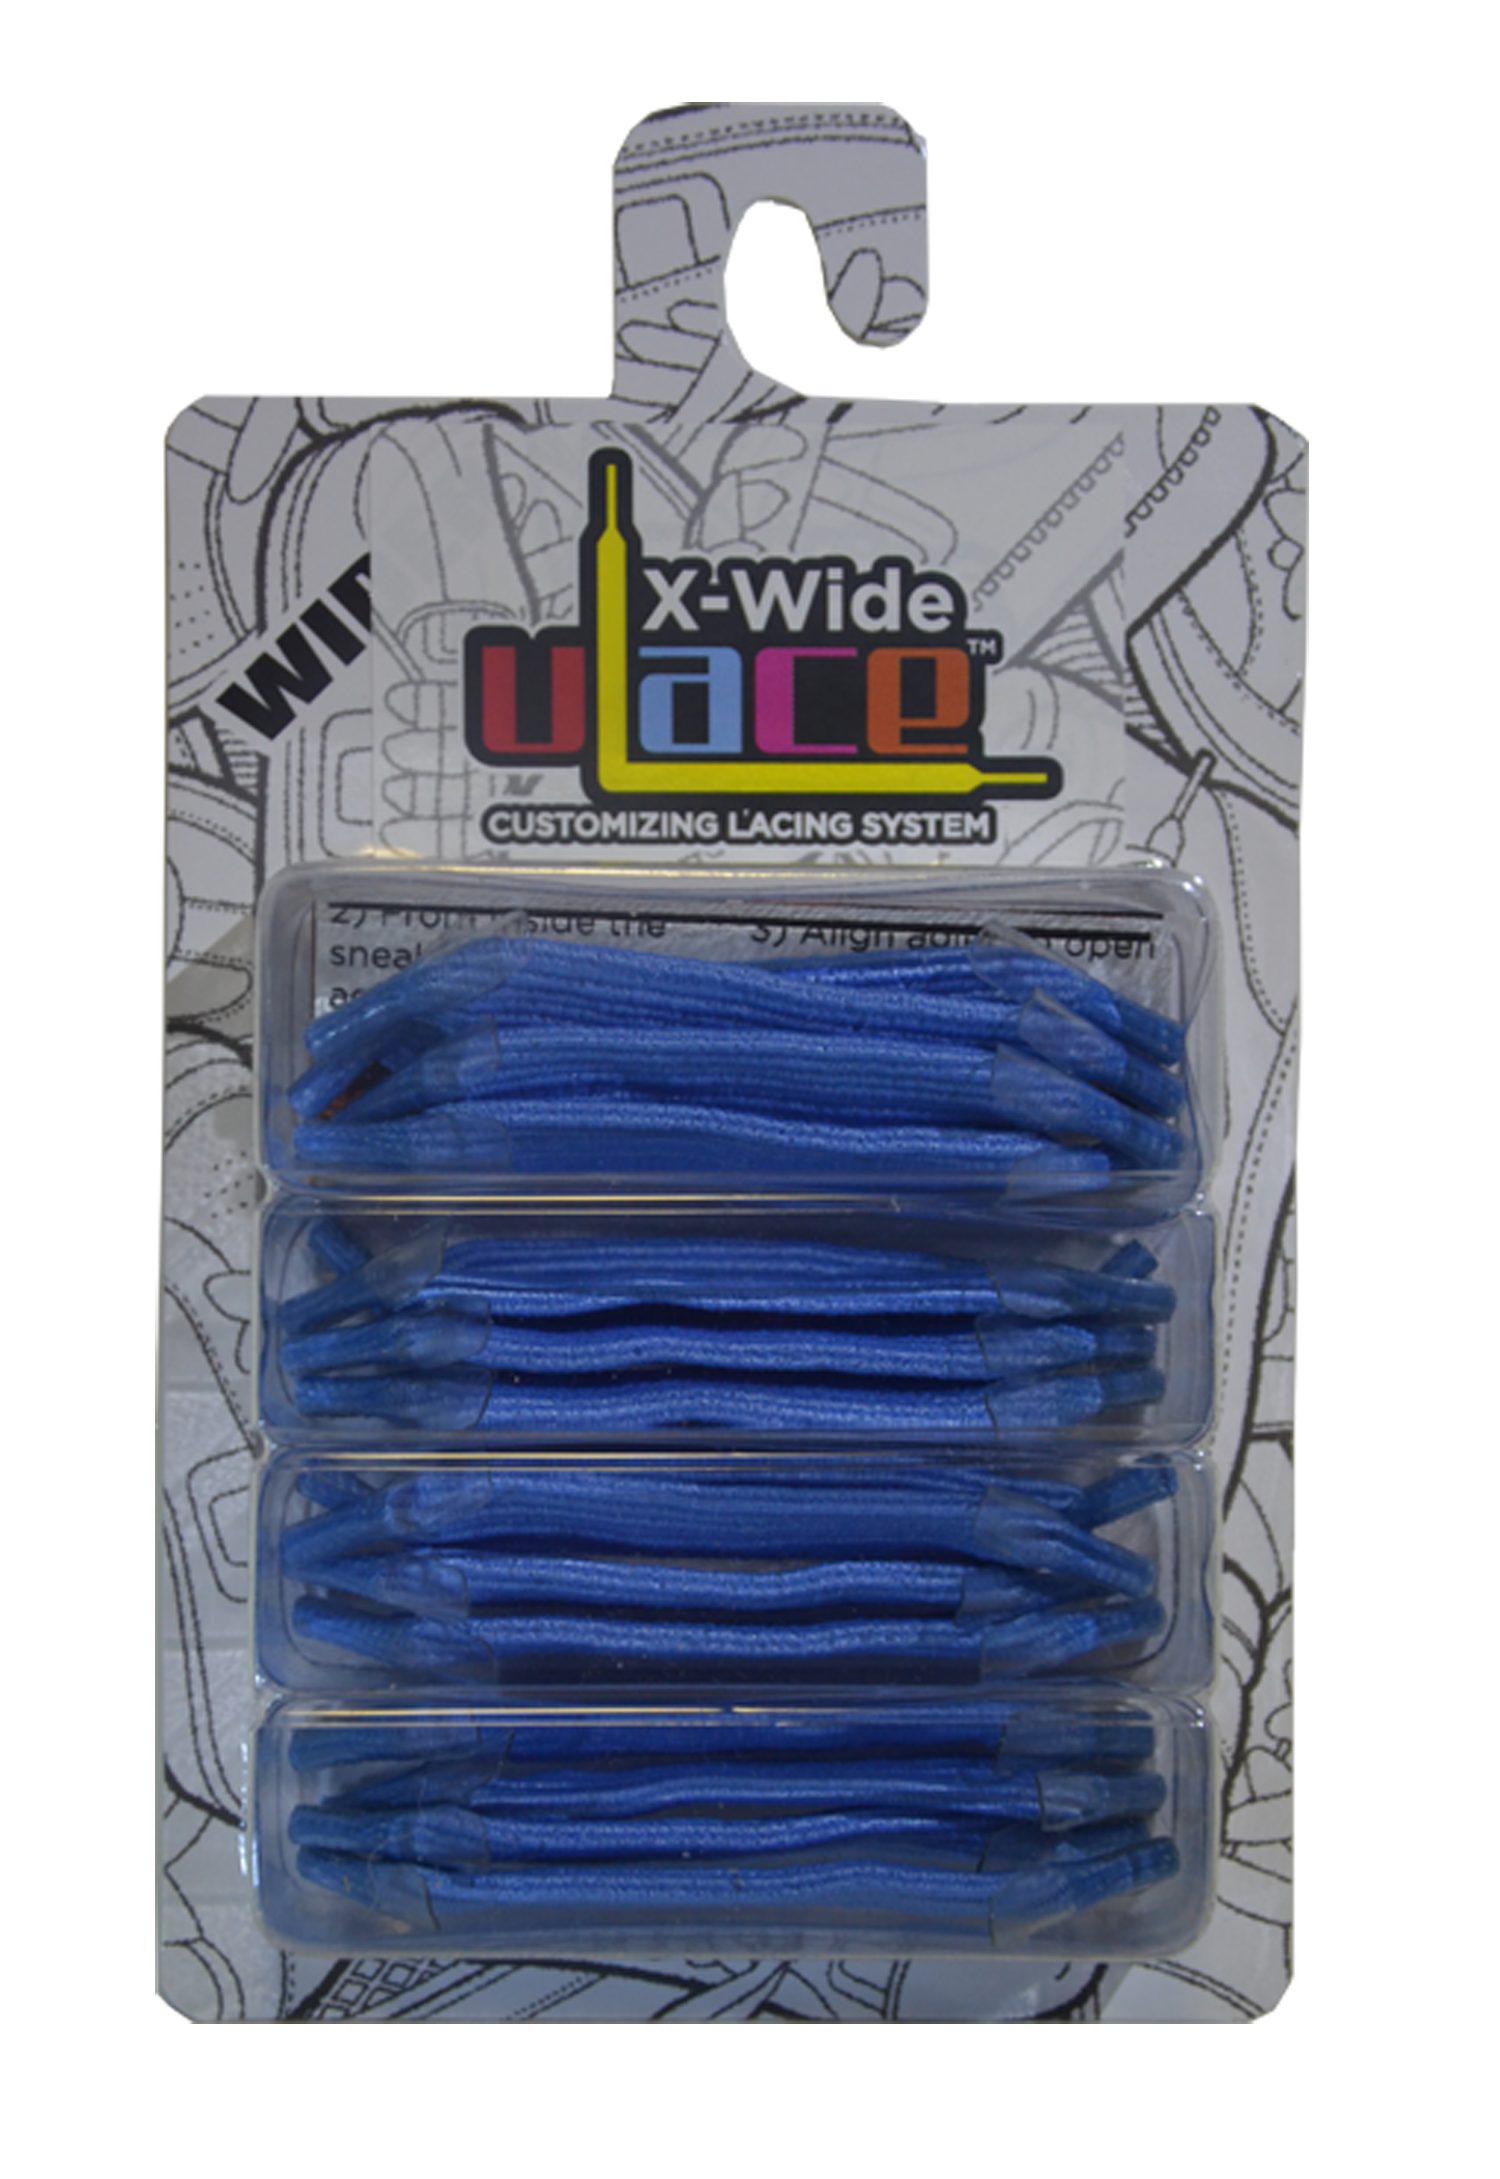 U-Laces Schnürsenkel X-Wide Fatties 16 Stück - elastische Schnürsenkel mit Wiederhaken Light Blue